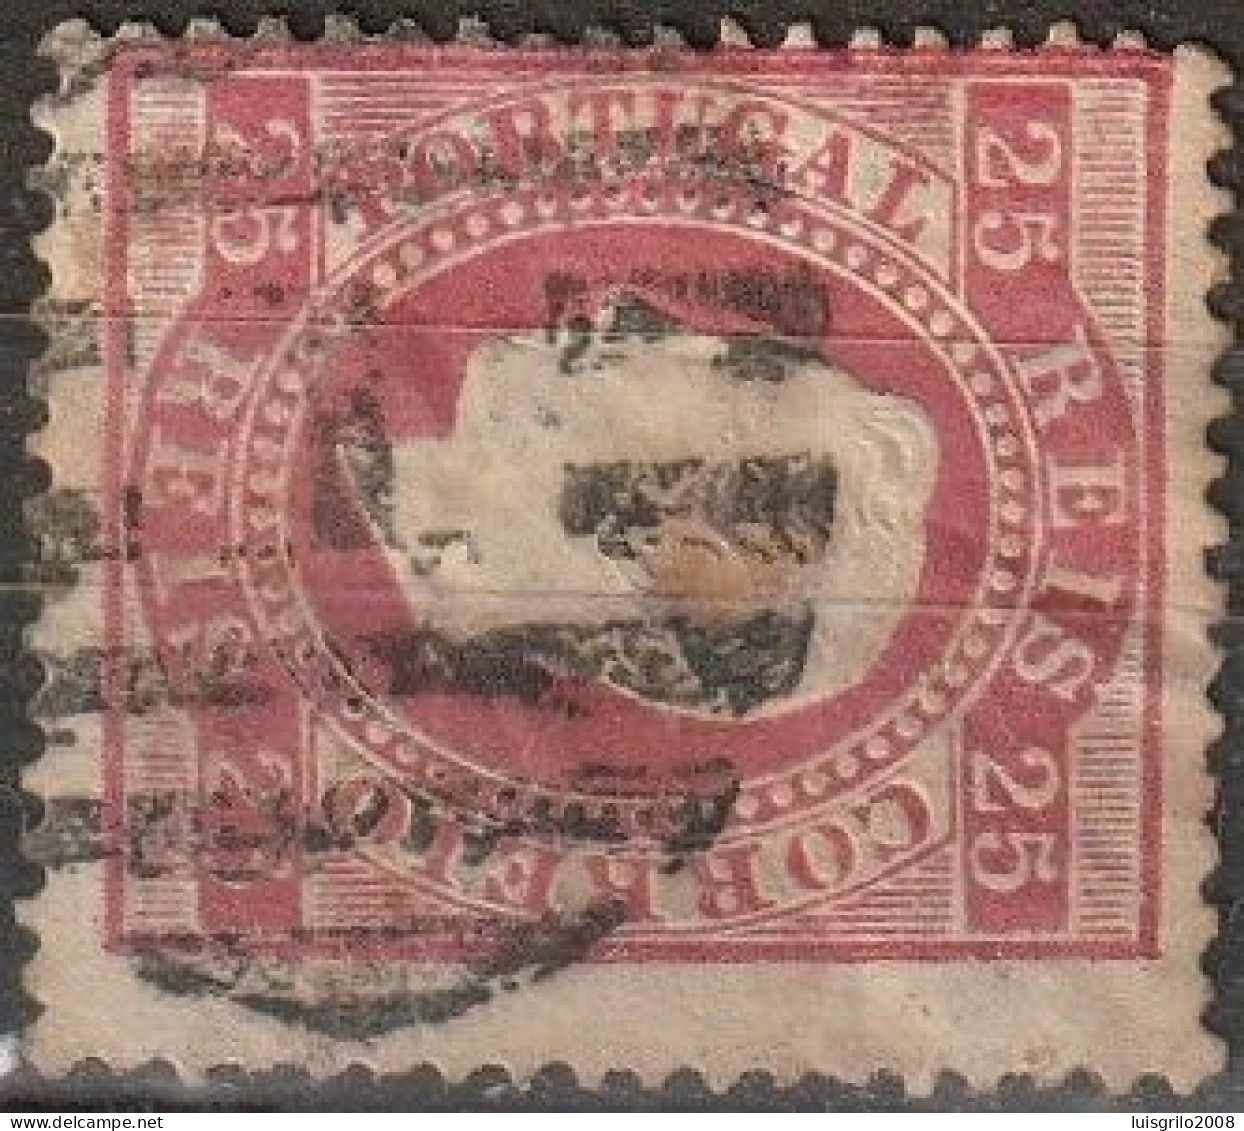 Marcofilia, Carimbos Numéricos De Barras - 1 LISBOA -|- 1869 - 2ª Reforma - Postmark Collection